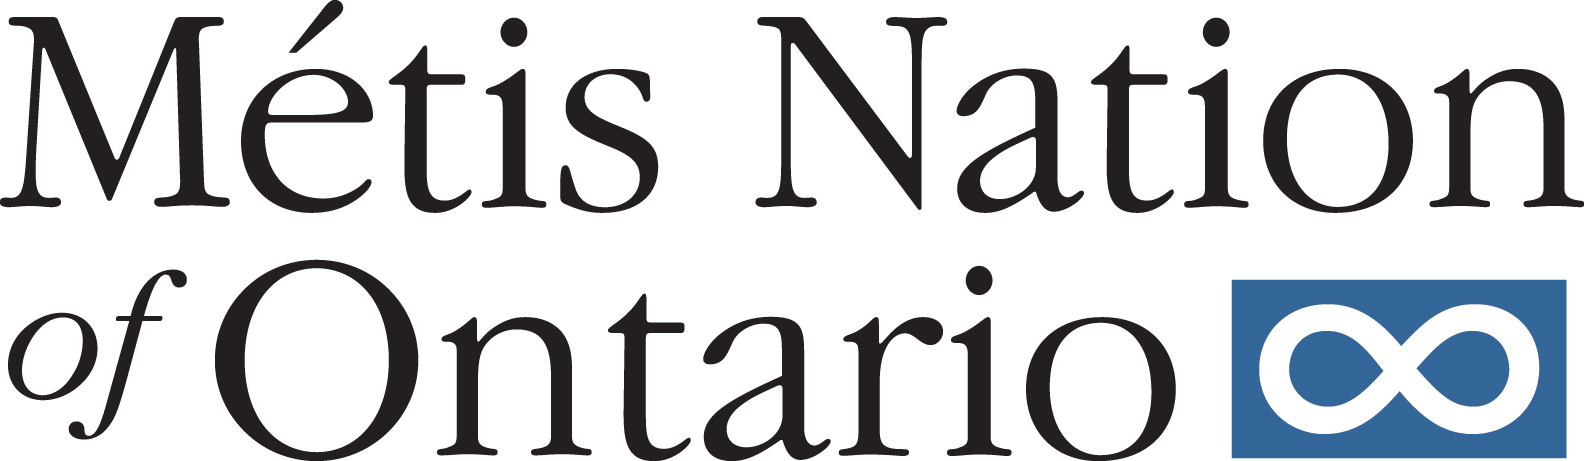 Metis Nation of Ontario logo